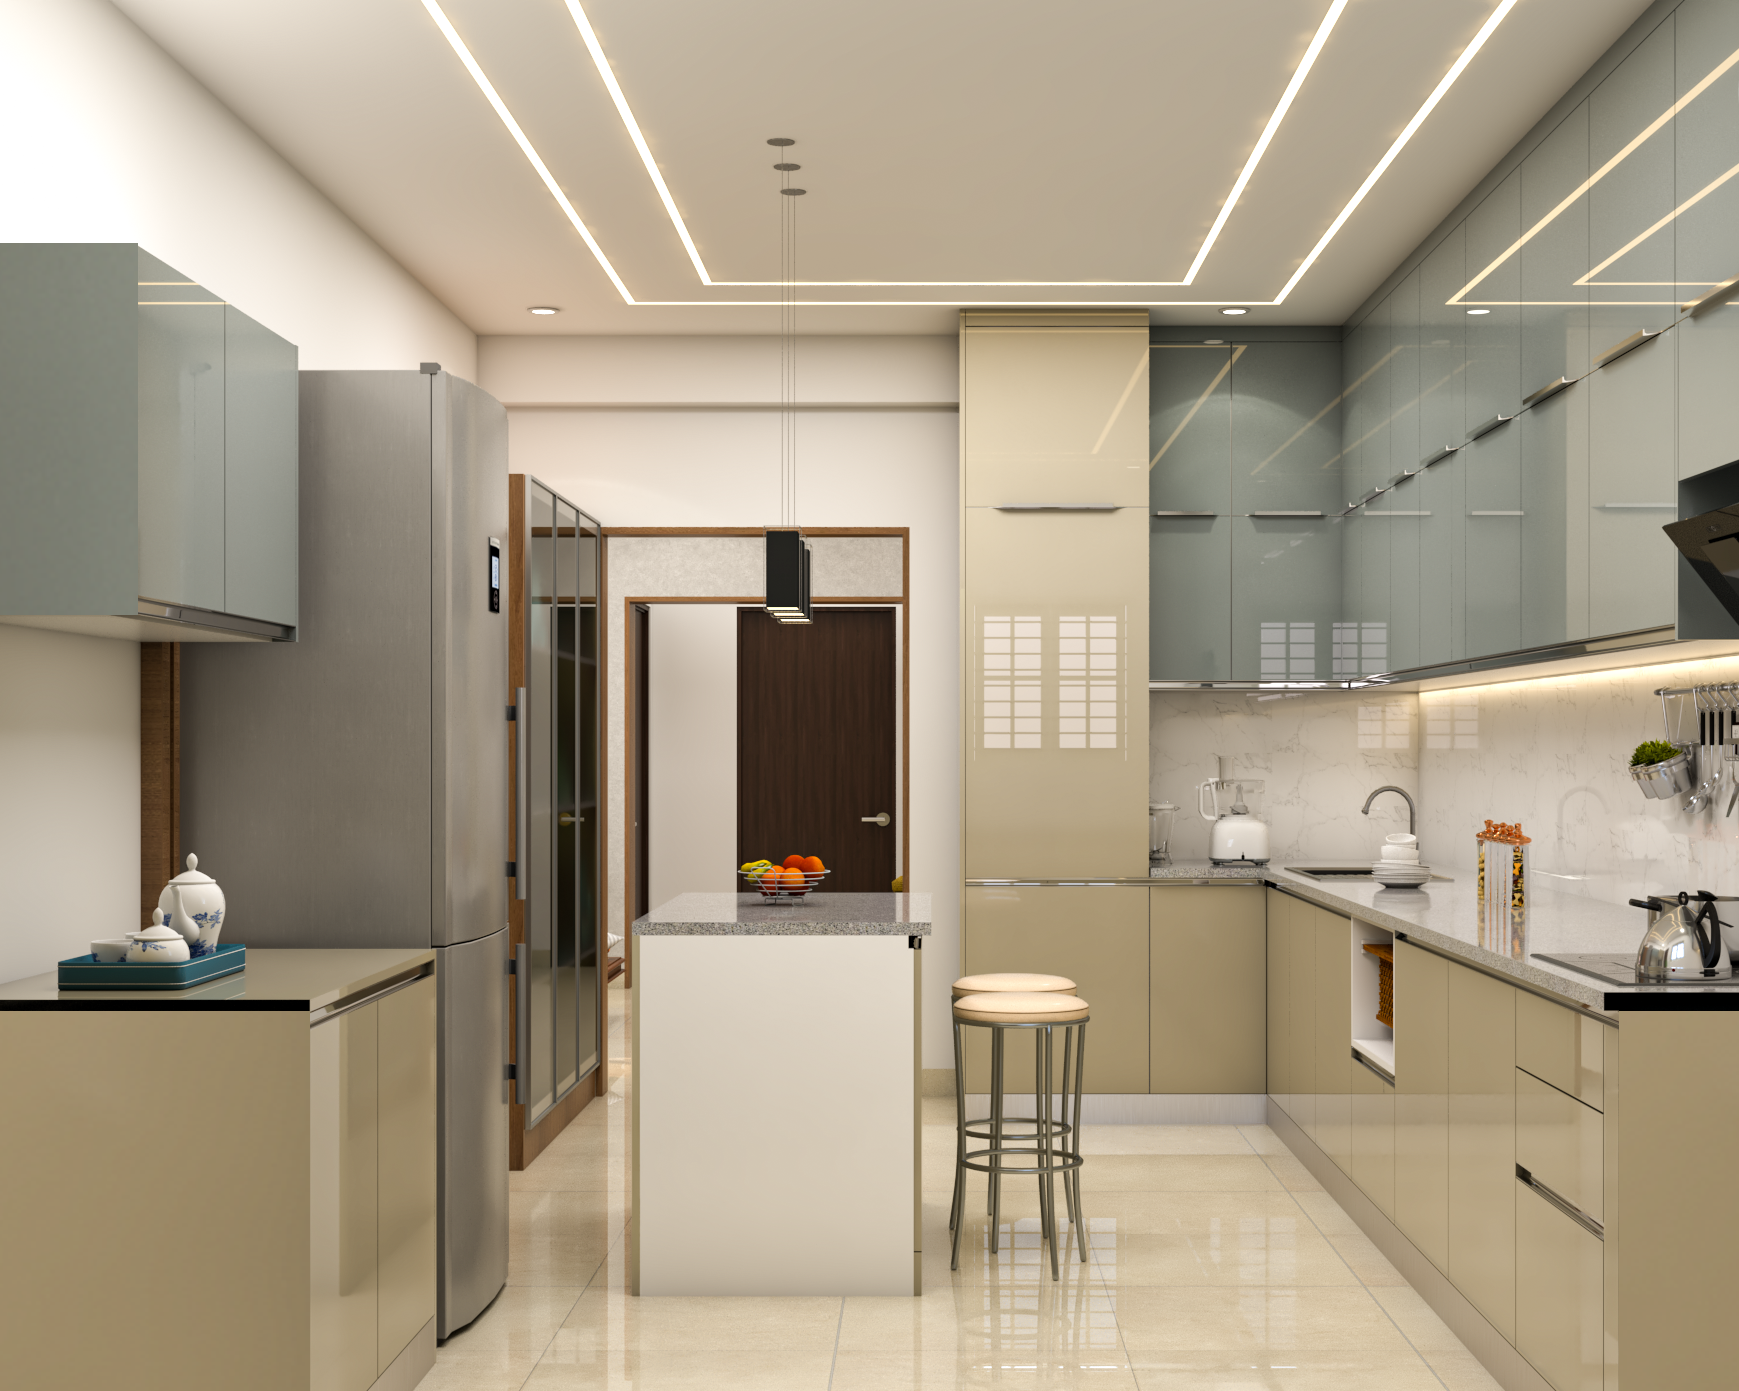 Modern Parallel Kitchen Design With Kitchen Island